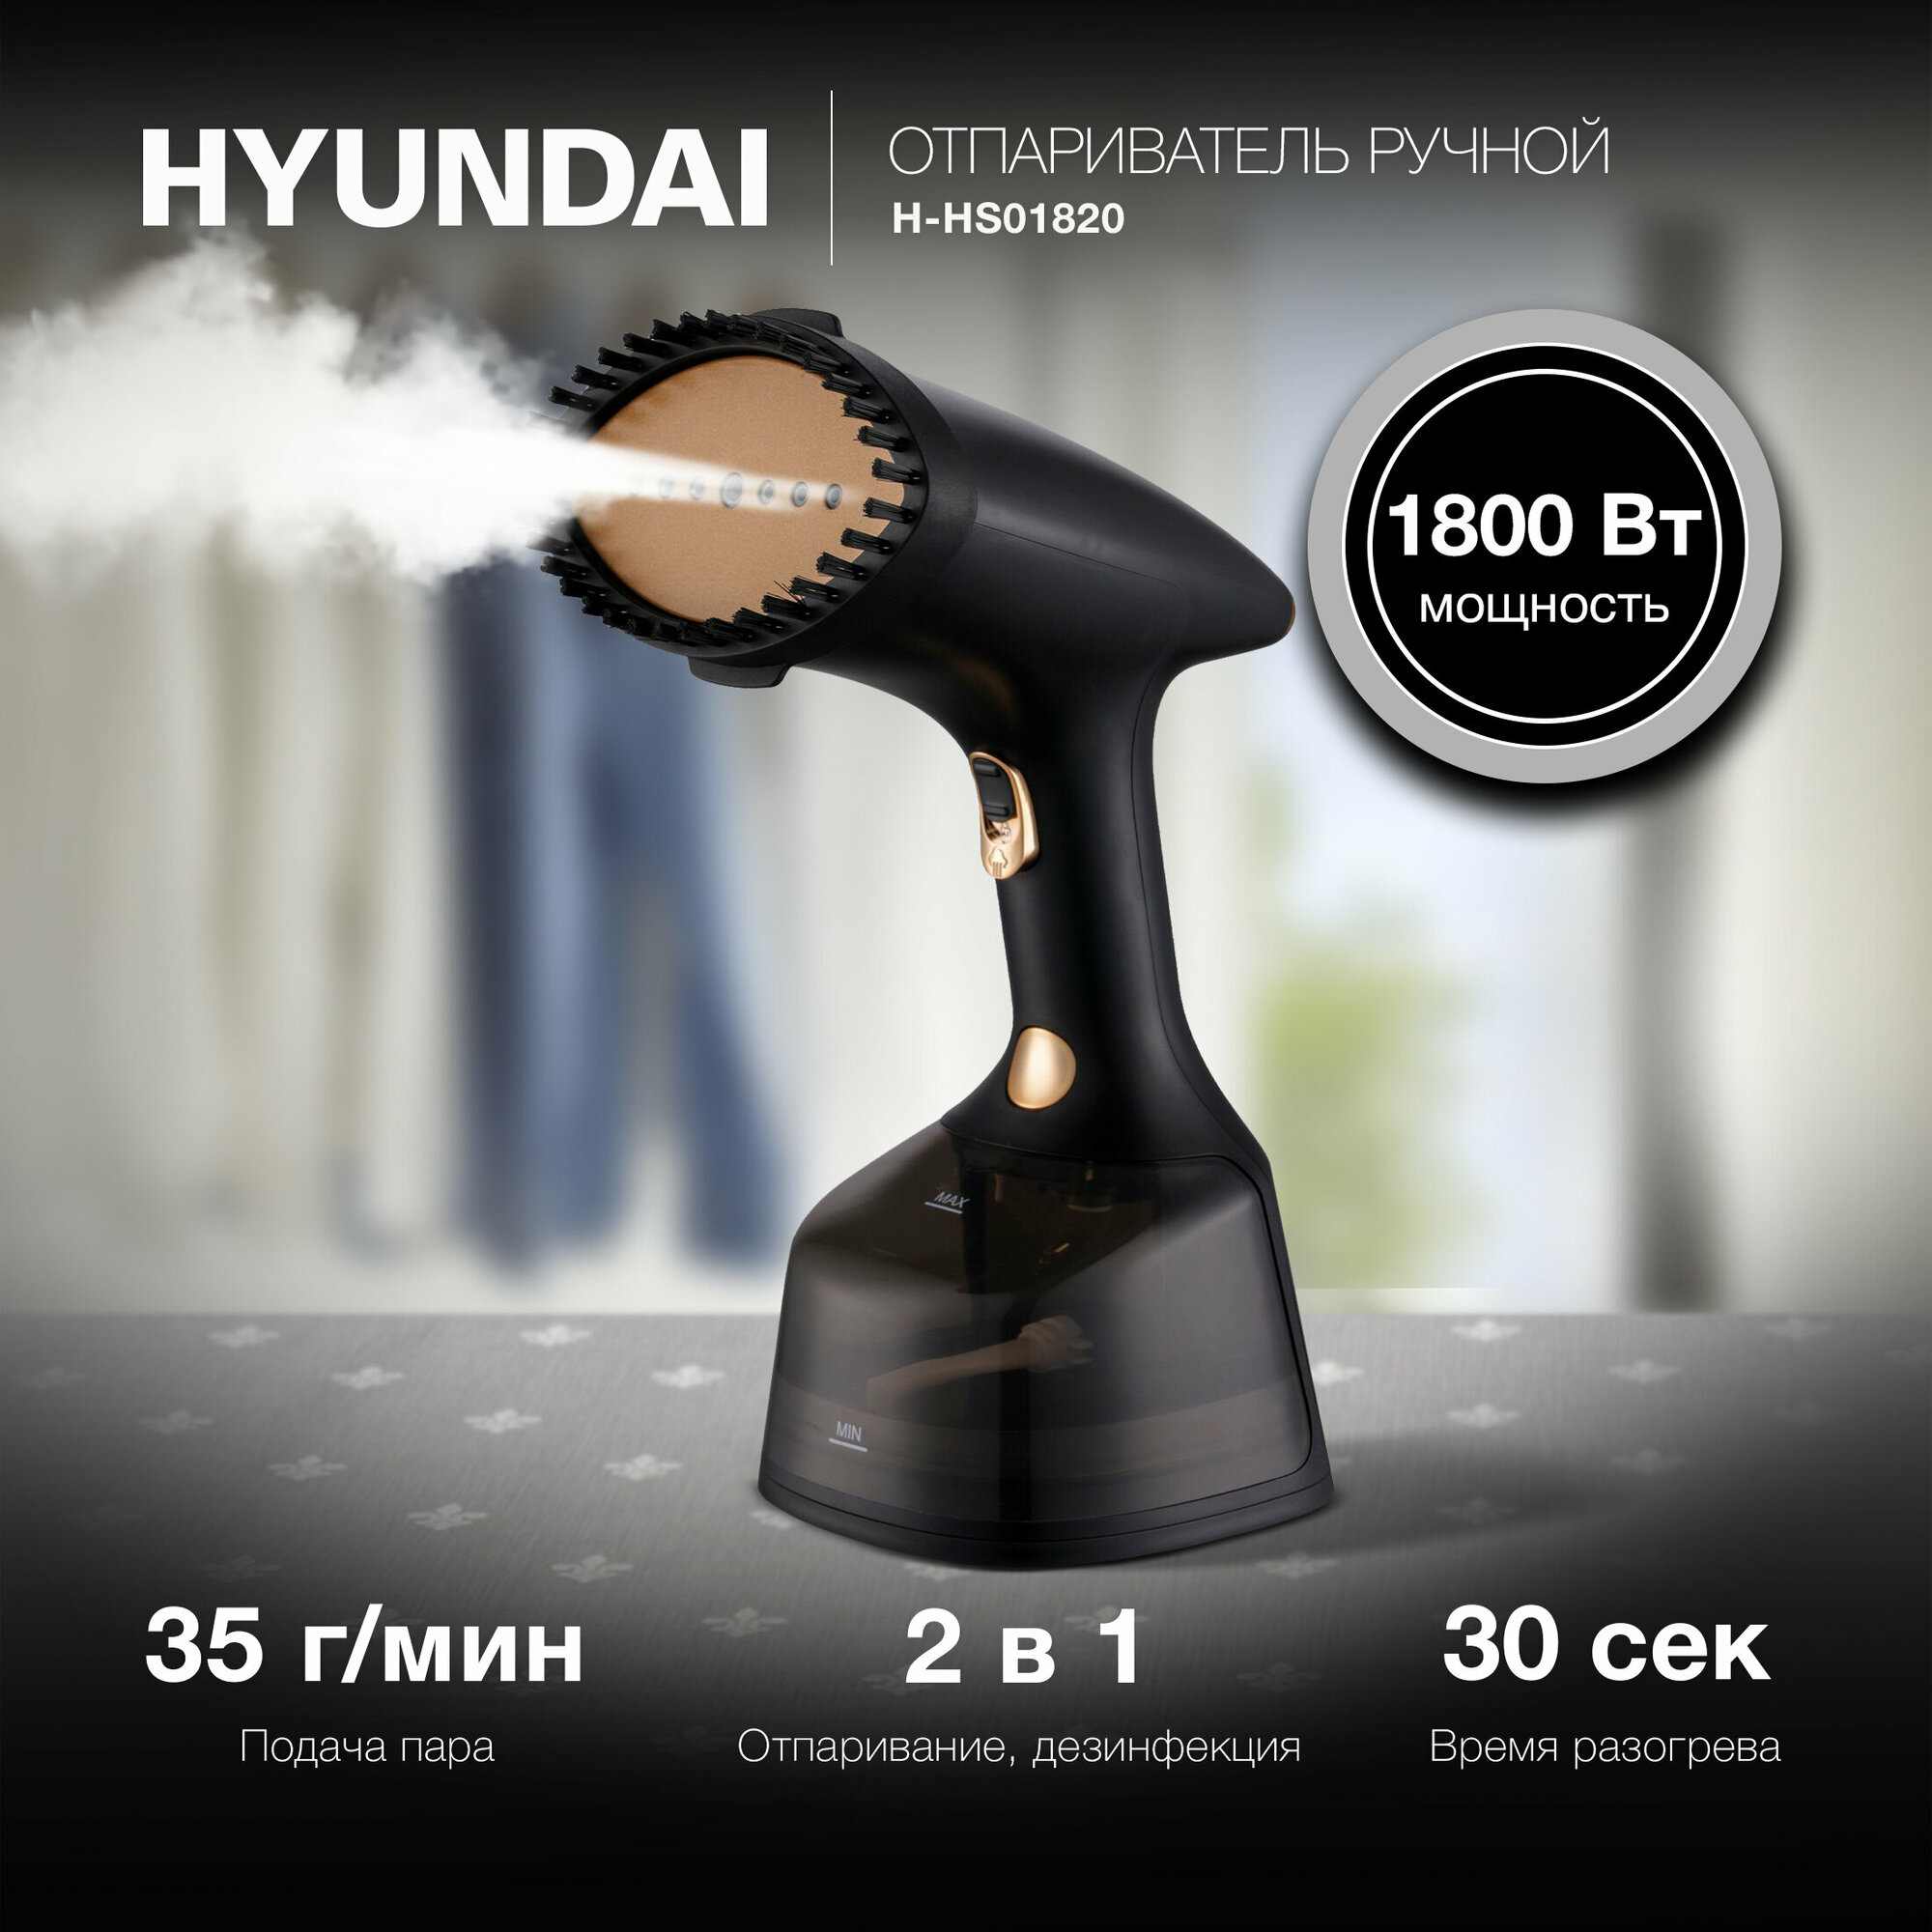 Отпариватель Hyundai H-HS01820 черный/золотистый